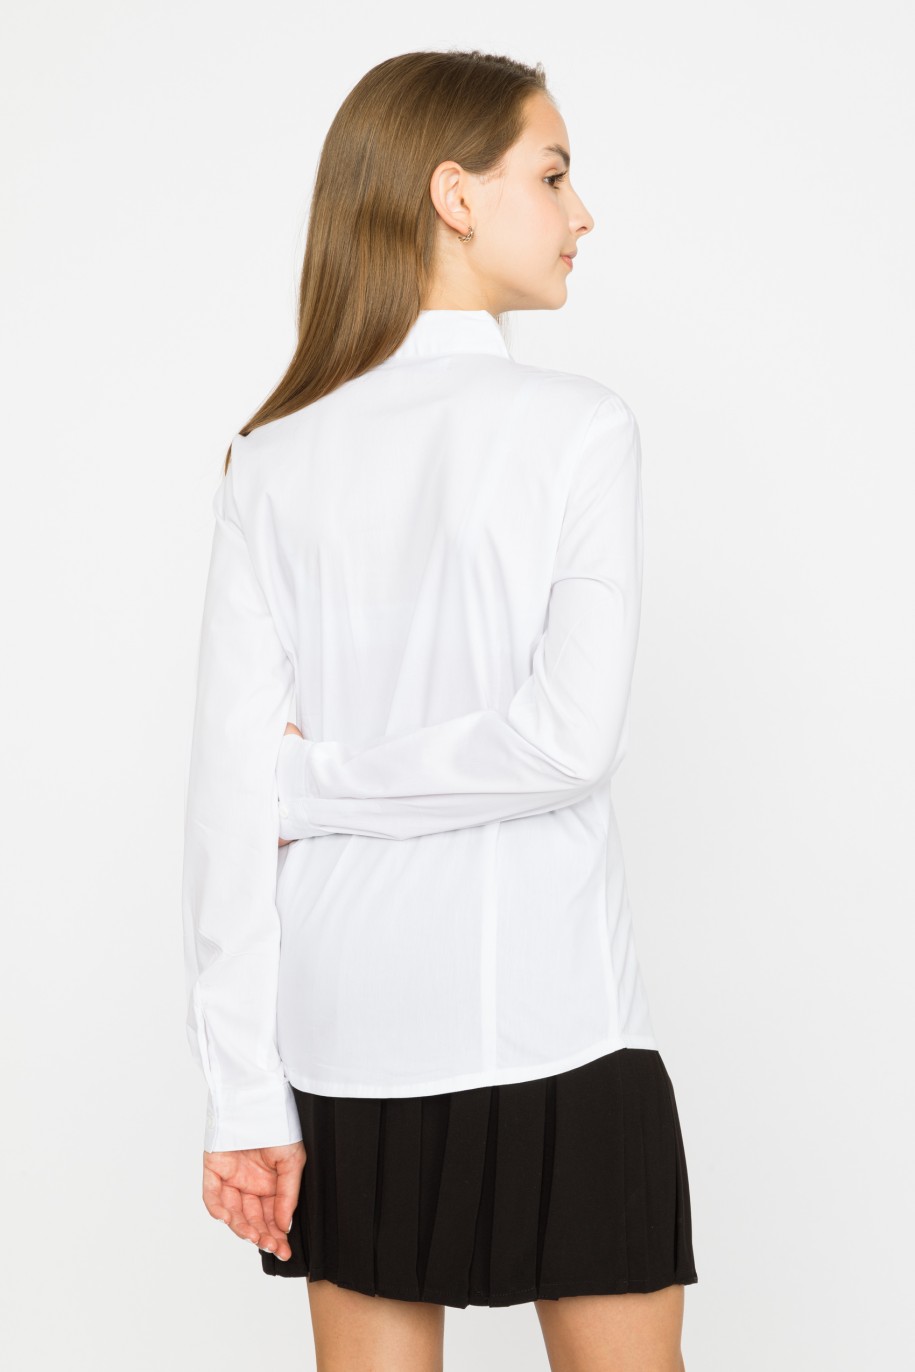 Biała elegancka koszula z ozdobną czarną tasiemką dla dziewczyny - 29413